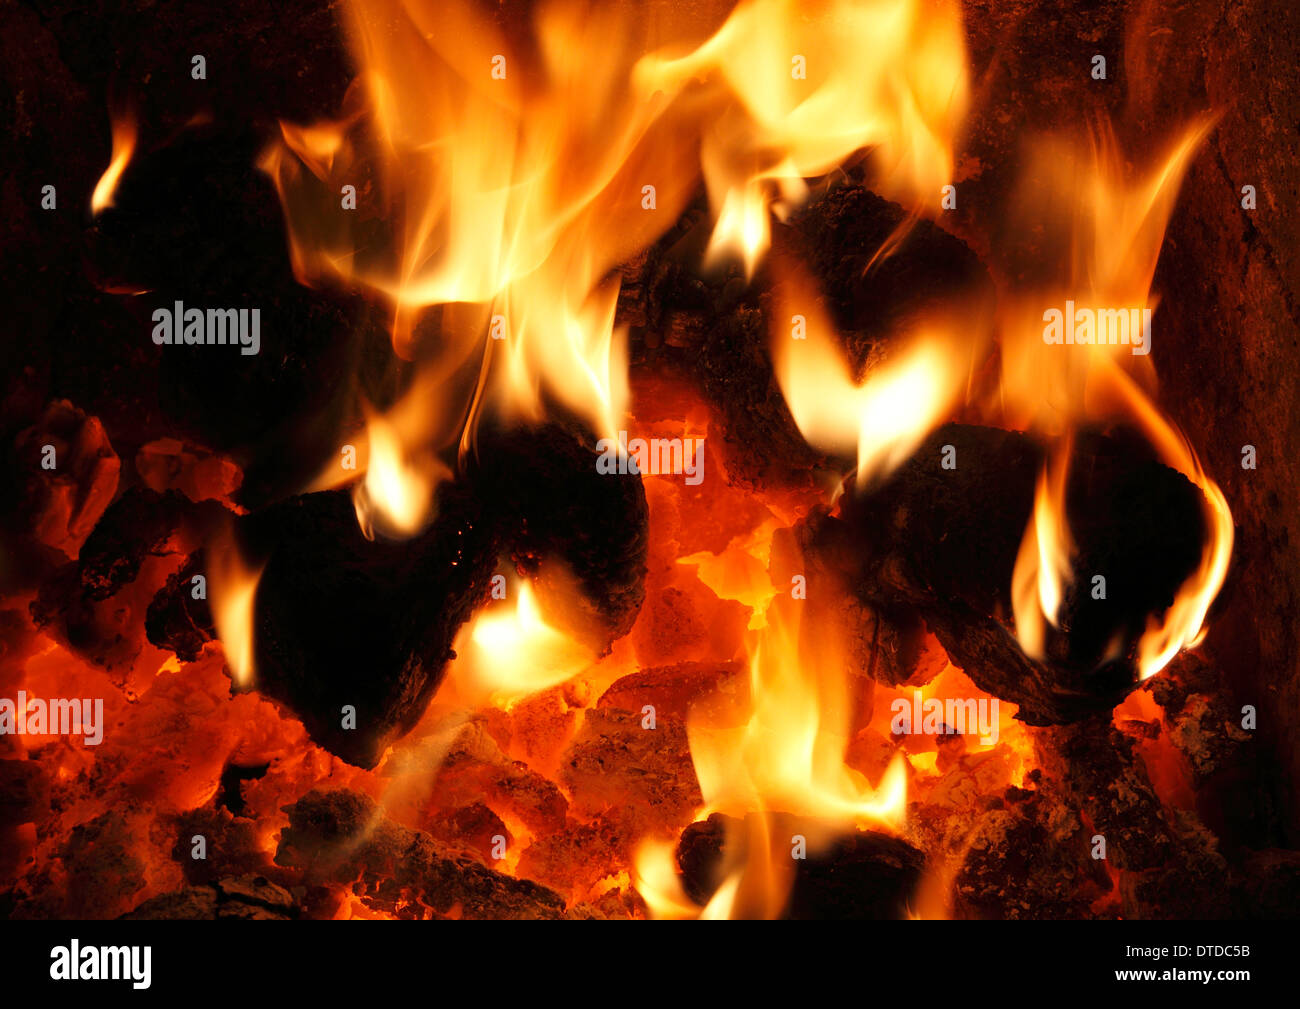 Combustibles sólidos, carbón nacional fuego, ardor, llamas, llamas corazón fireside incendios energía de calor calor cálido hogar incendios Foto de stock